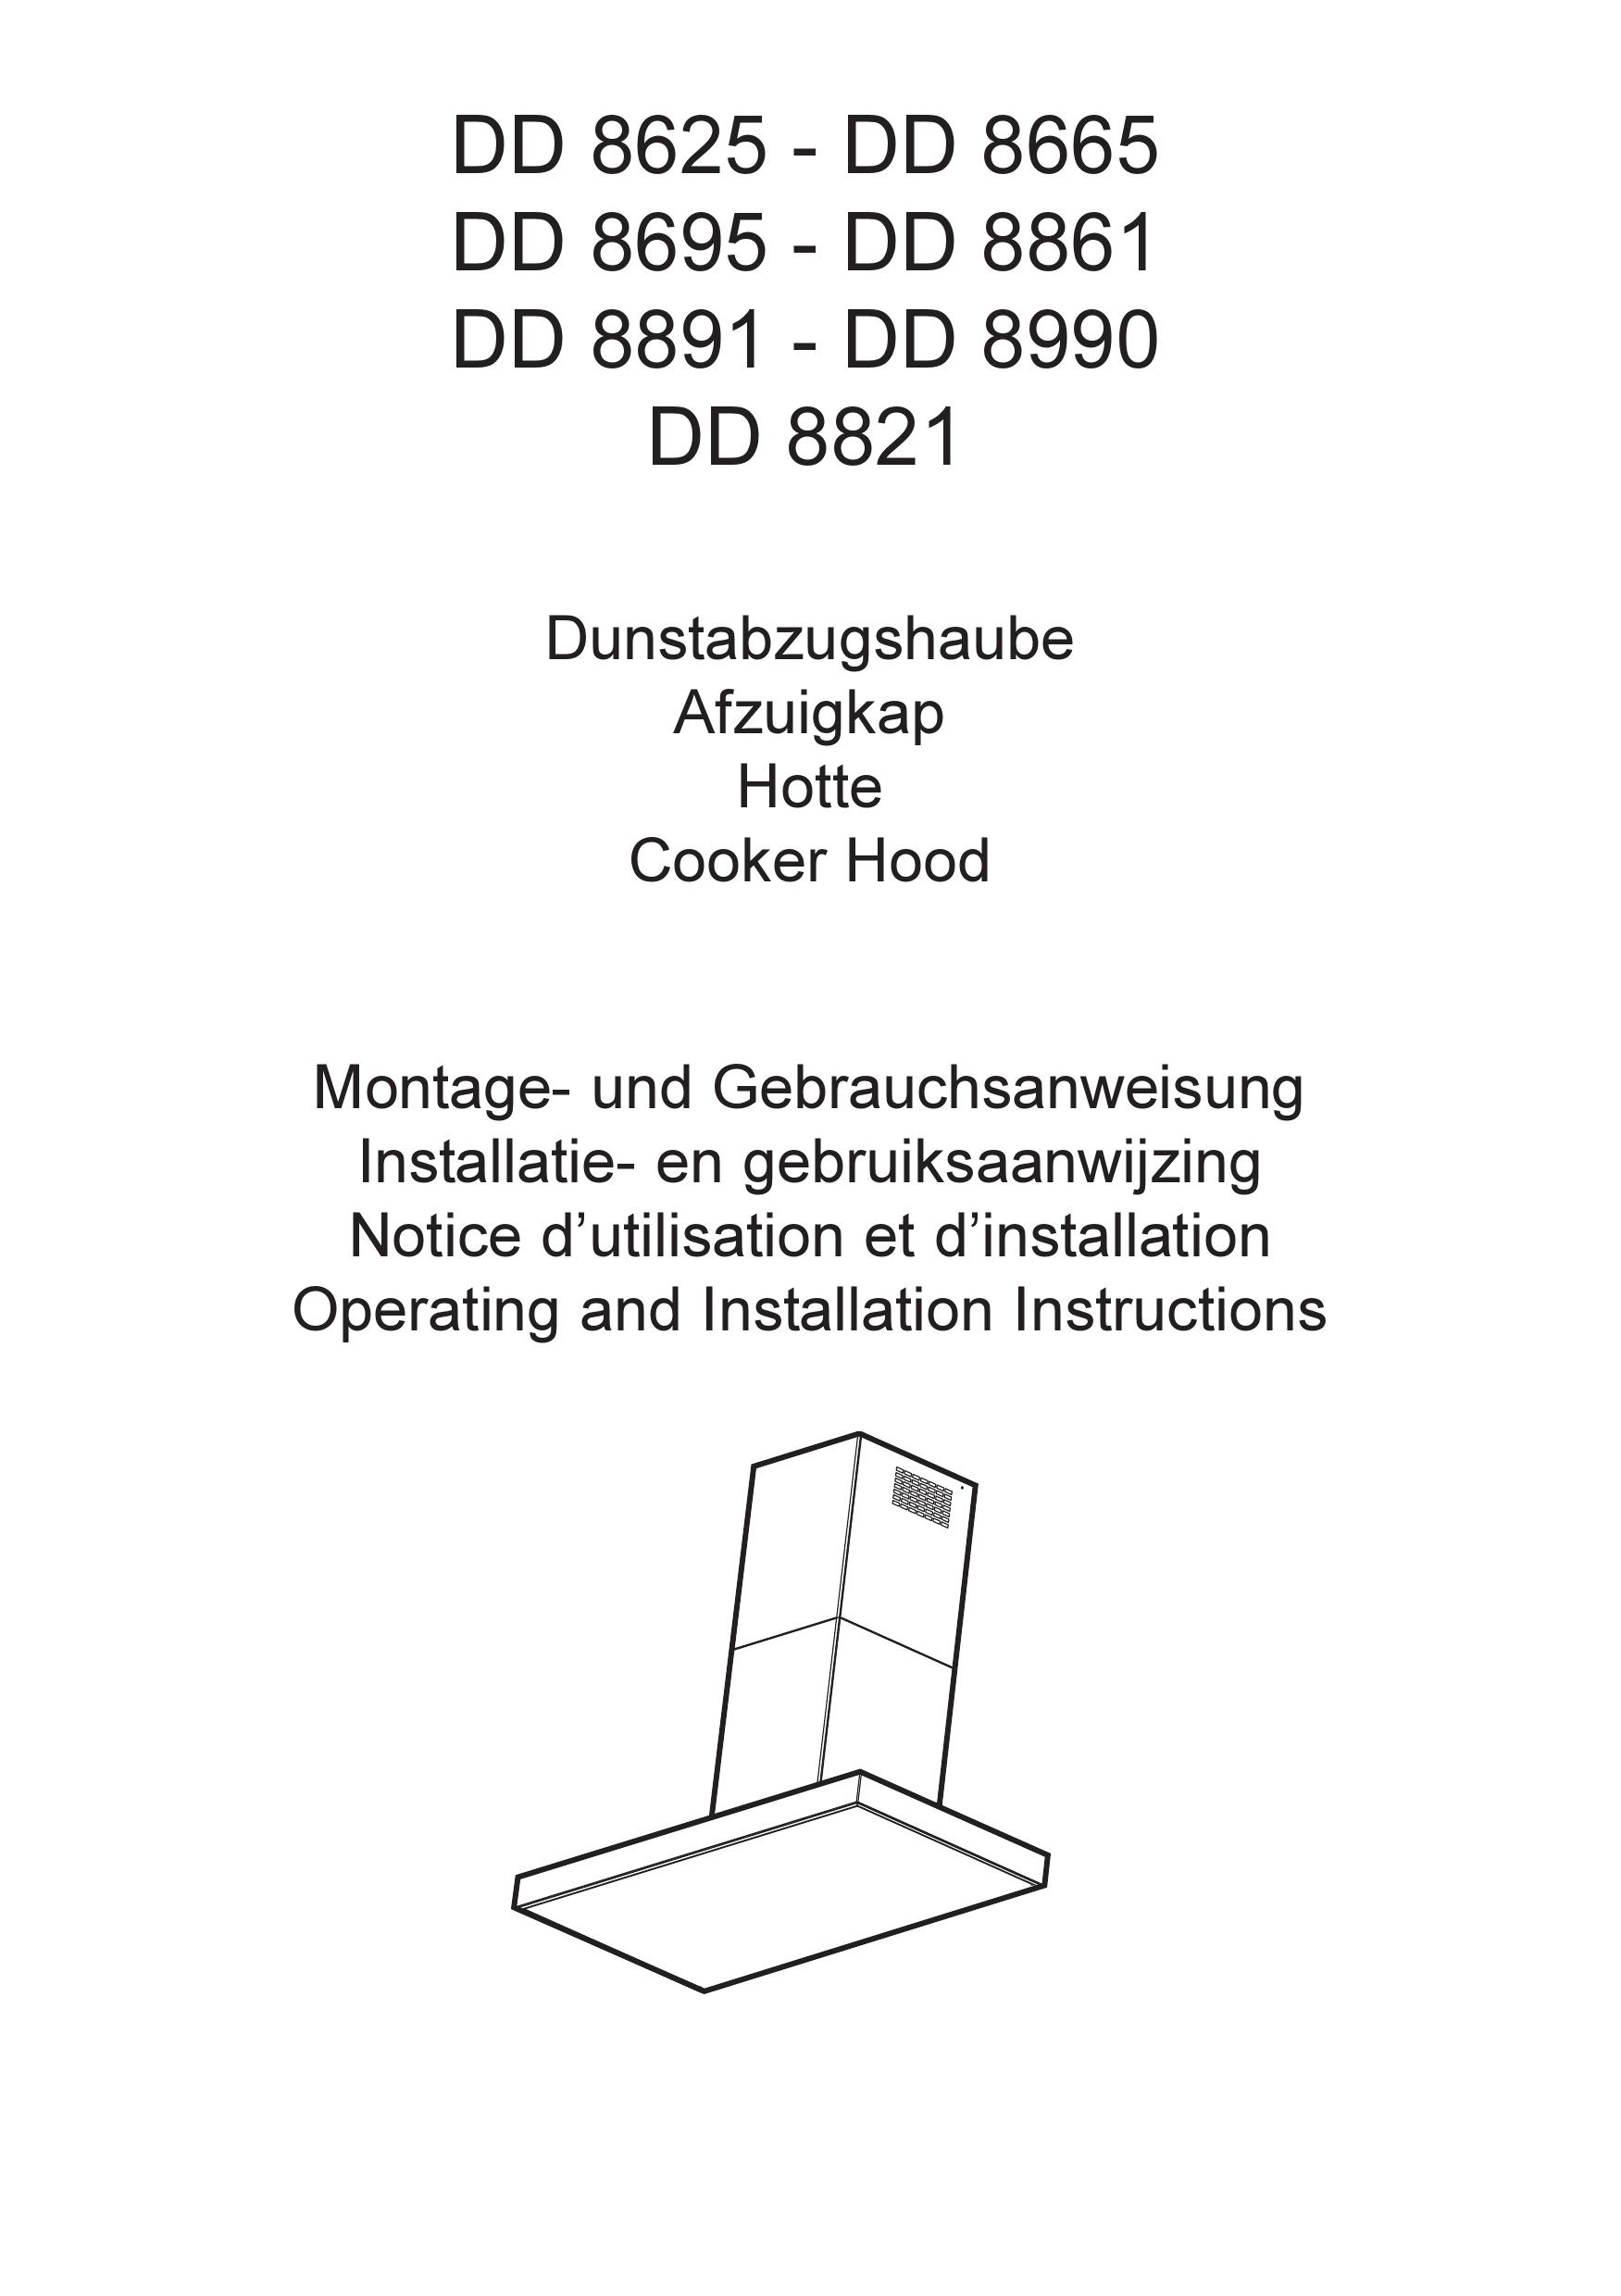 AEG DD 8891 Ventilation Hood User Manual